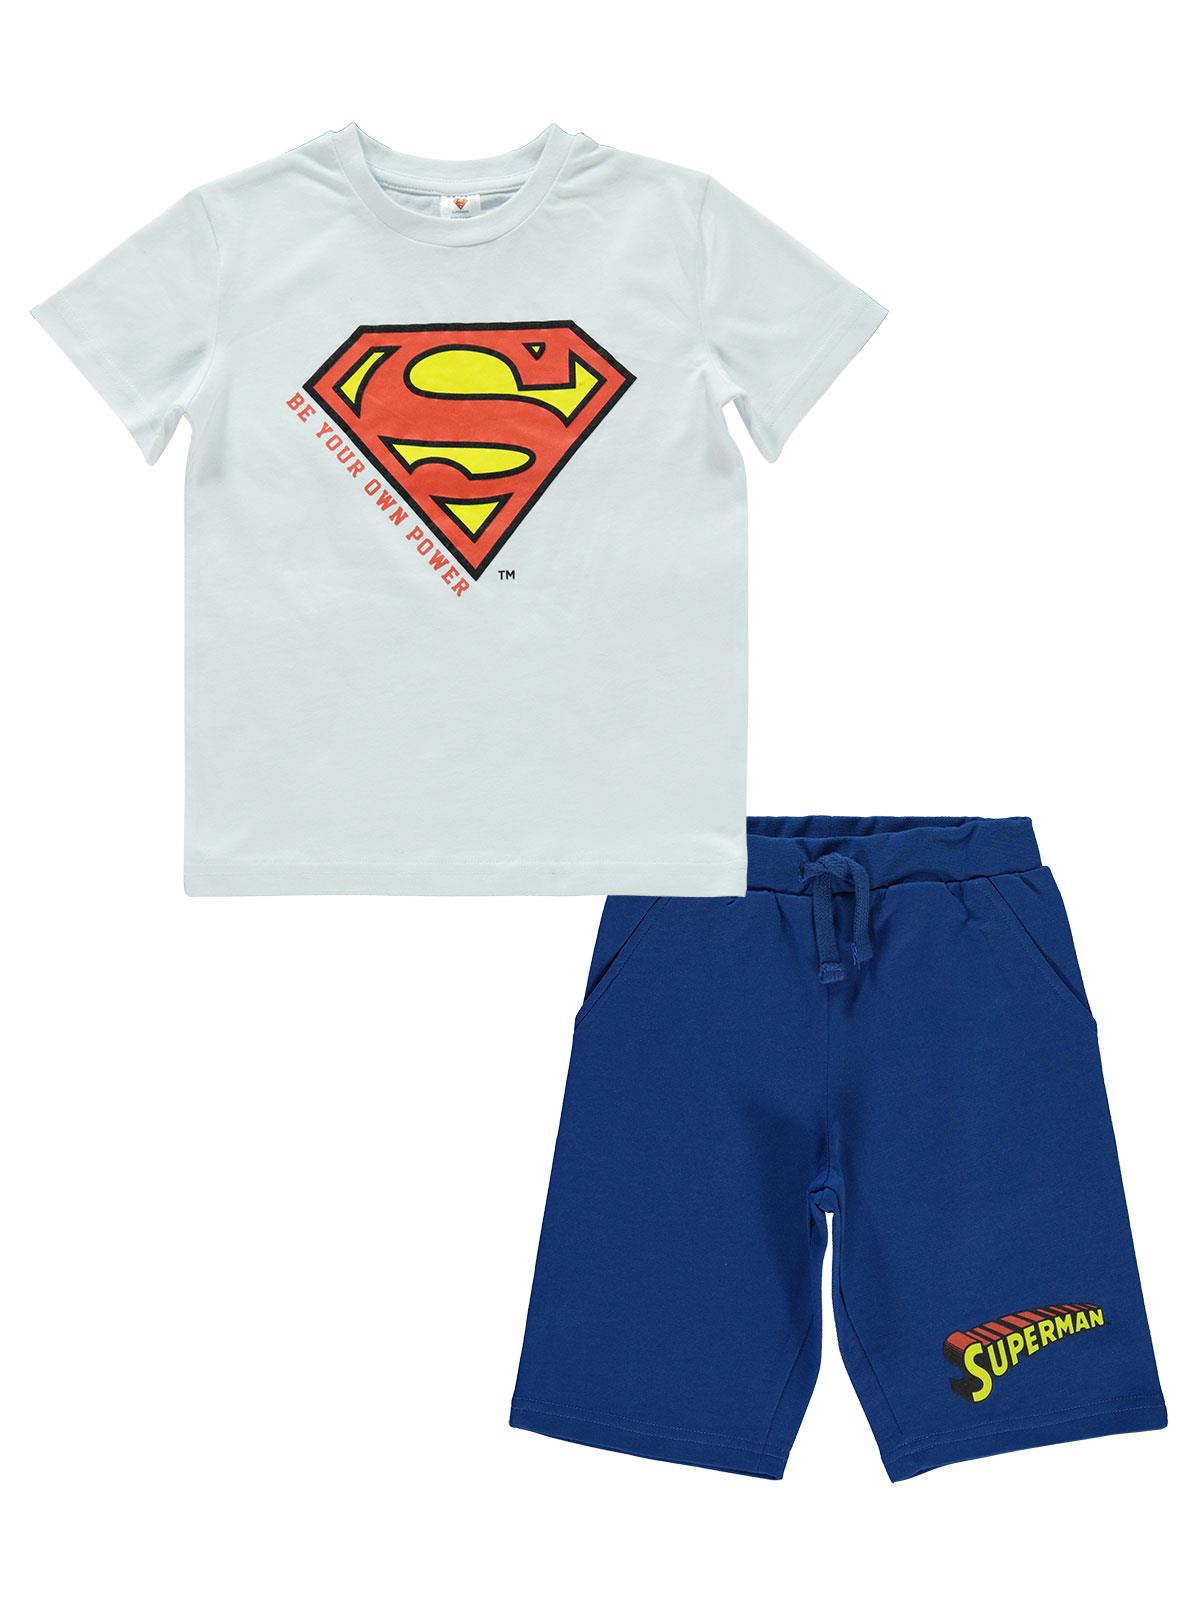 Süperman Erkek Çocuk Takım 3-9 Yaş Beyaz